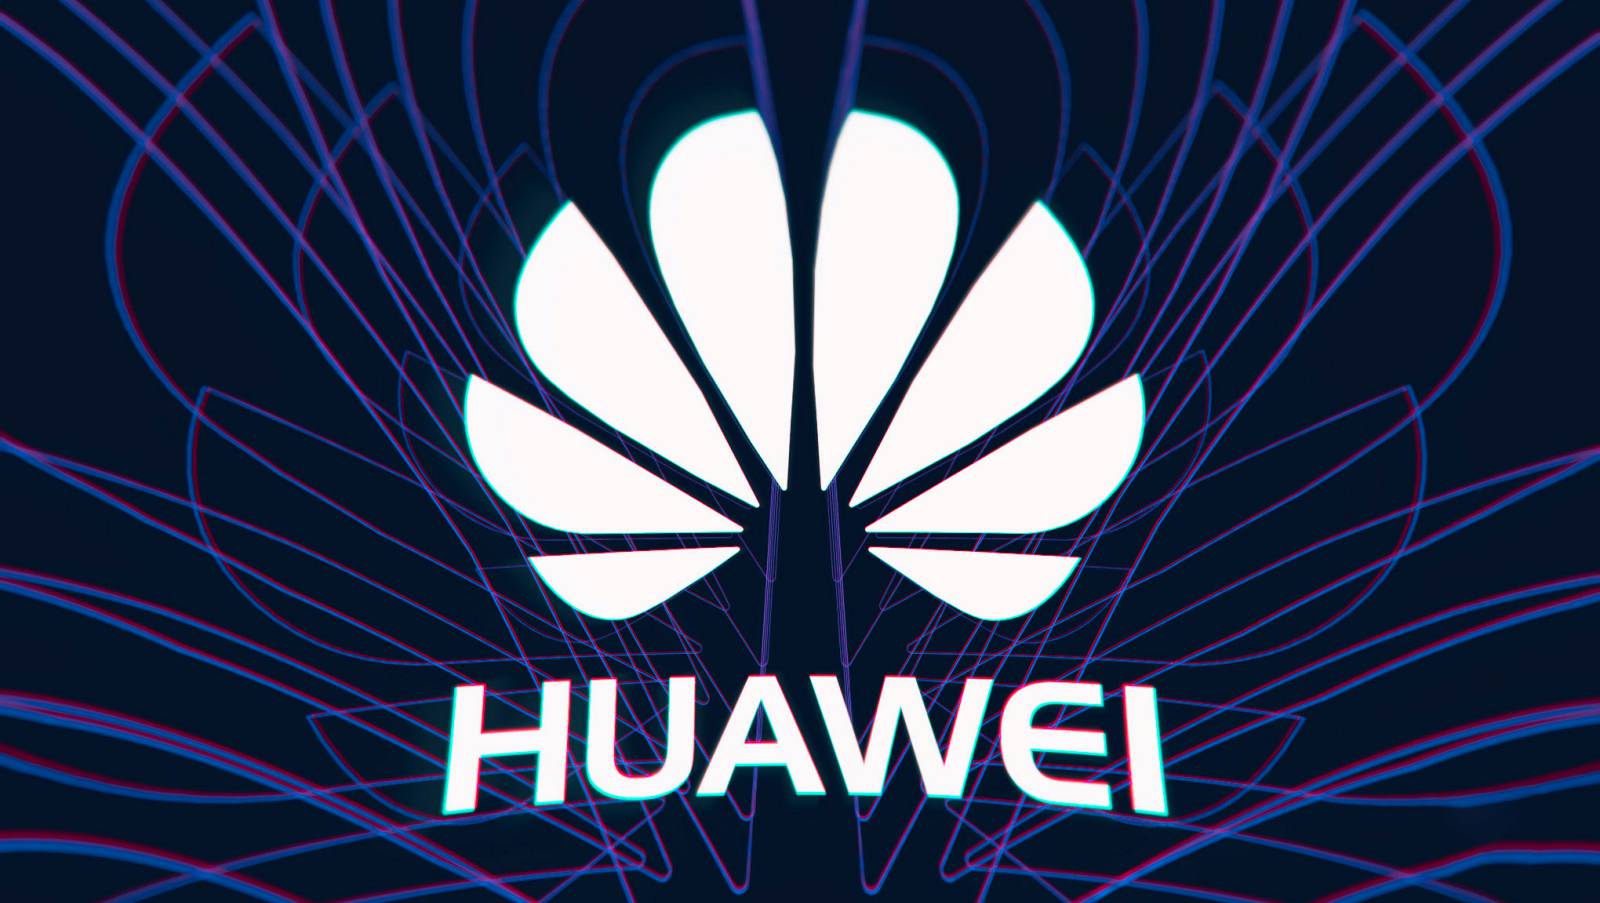 Huawei 5g problem